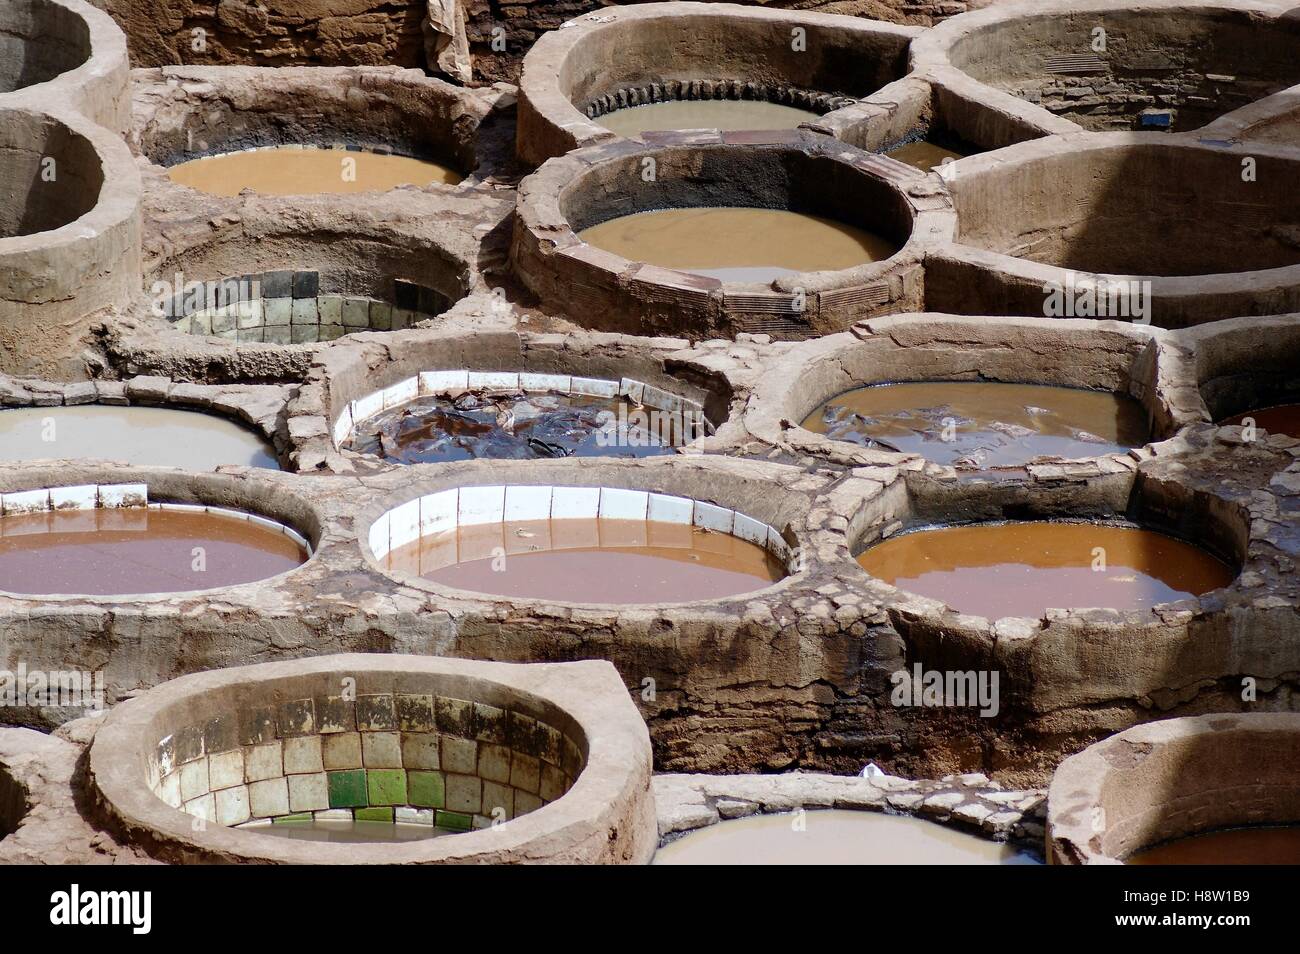 La storica conceria in pelle Chouara, o Chouwara, a Fez, in Marocco, utilizza tini da esterno in pietra rotonda per tingere i tessuti. Foto Stock